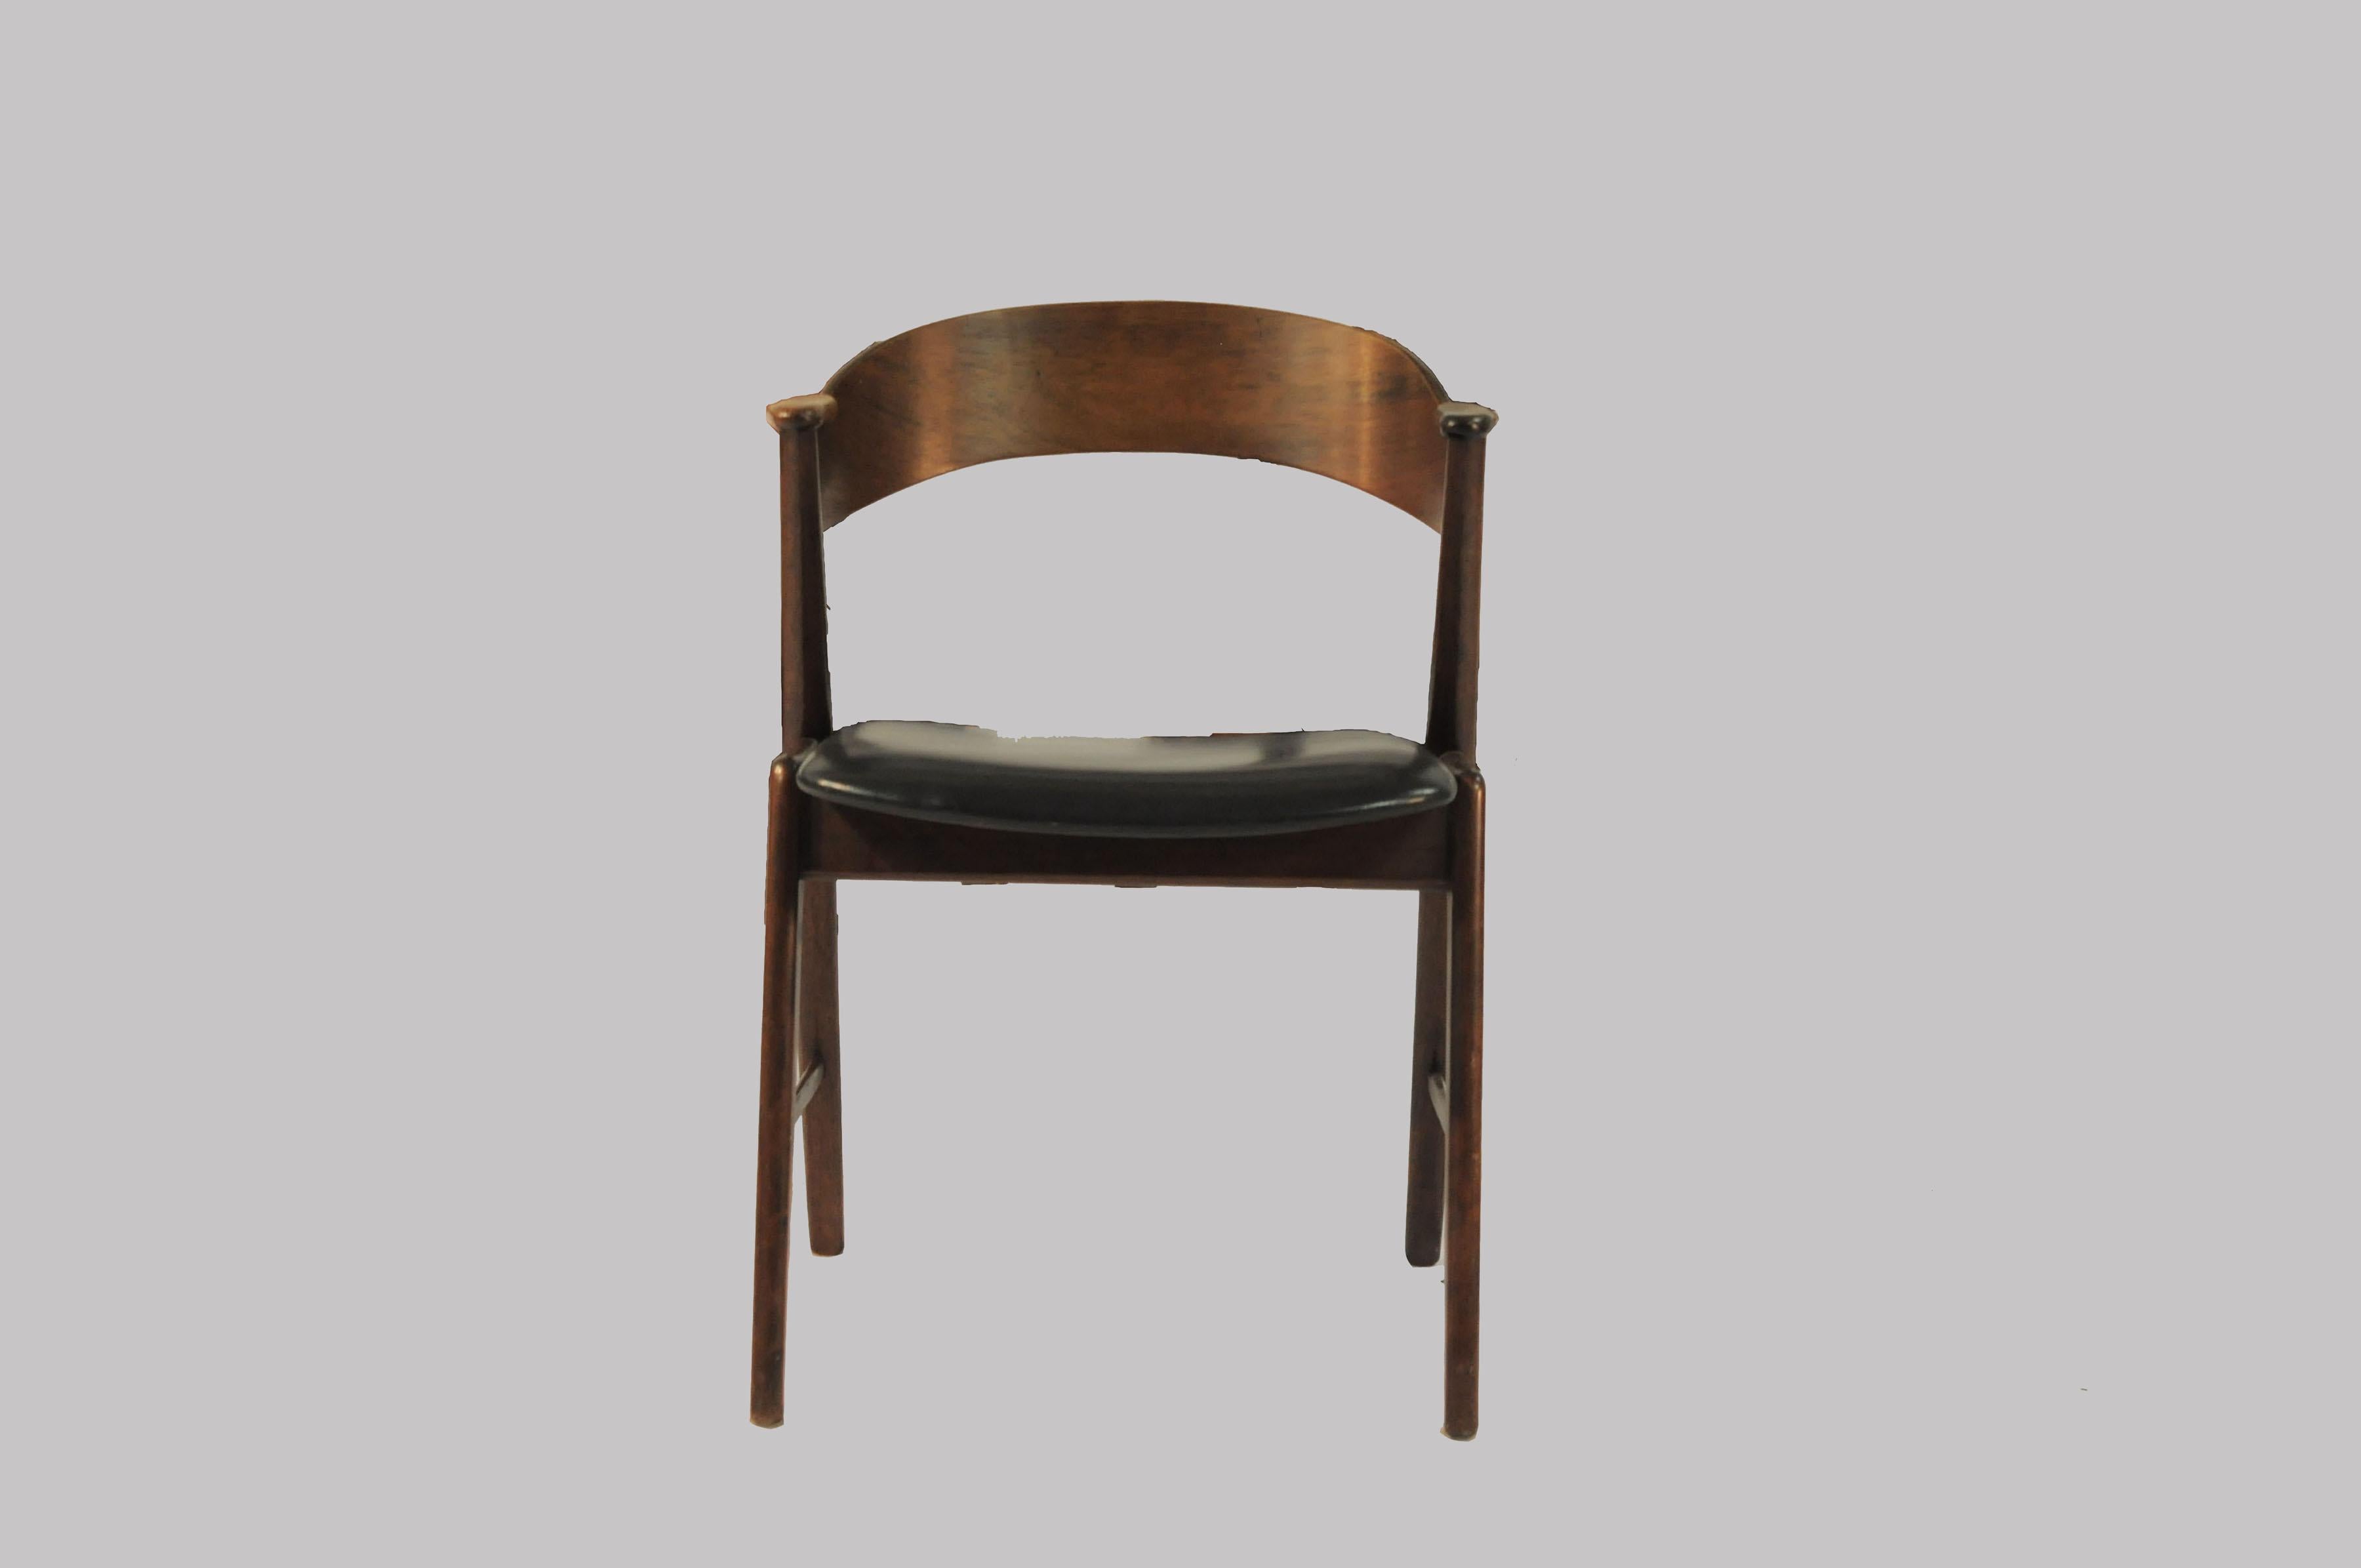 1960er Sechs vollständig restaurierte dänische Palisander-Esszimmerstühle, individuell gepolstert.

Satz von vier dänischen Esszimmerstühlen, bekannt als Modell 32, hergestellt von Korup Stolefabrik in den 1960er Jahren. Die Stühle haben